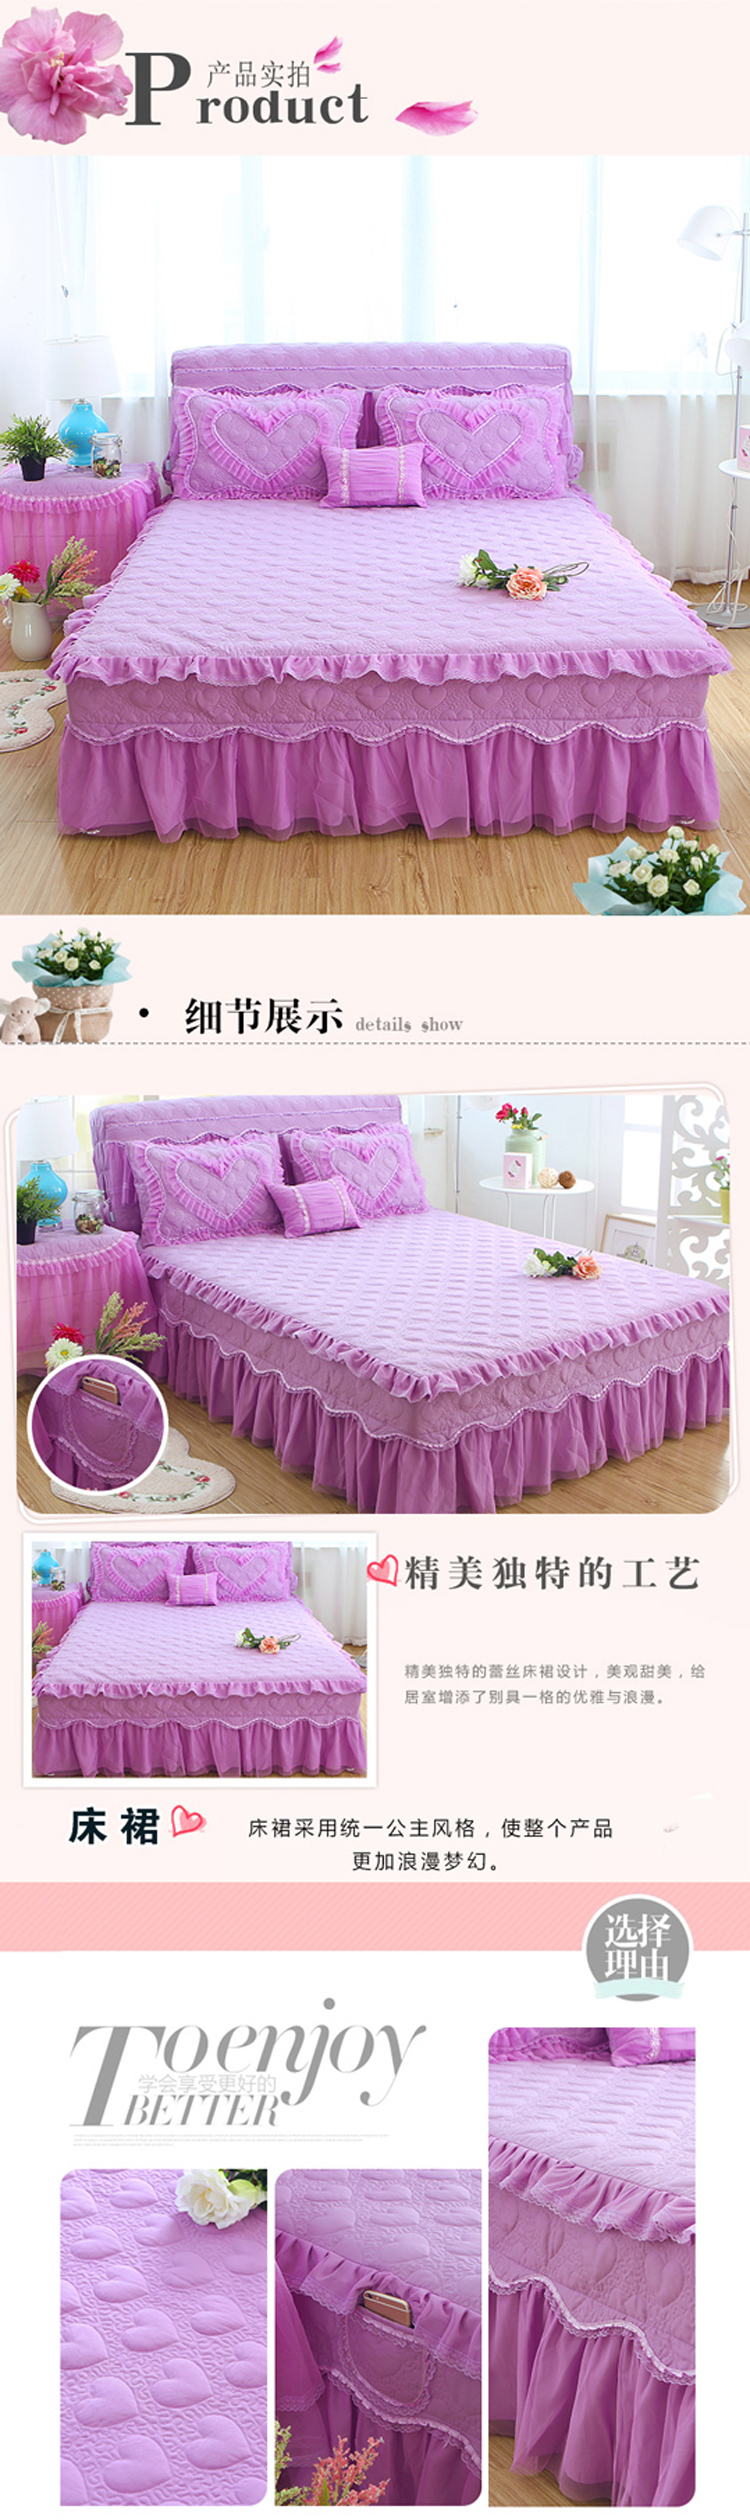 爱恋床裙描述紫色_02.jpg